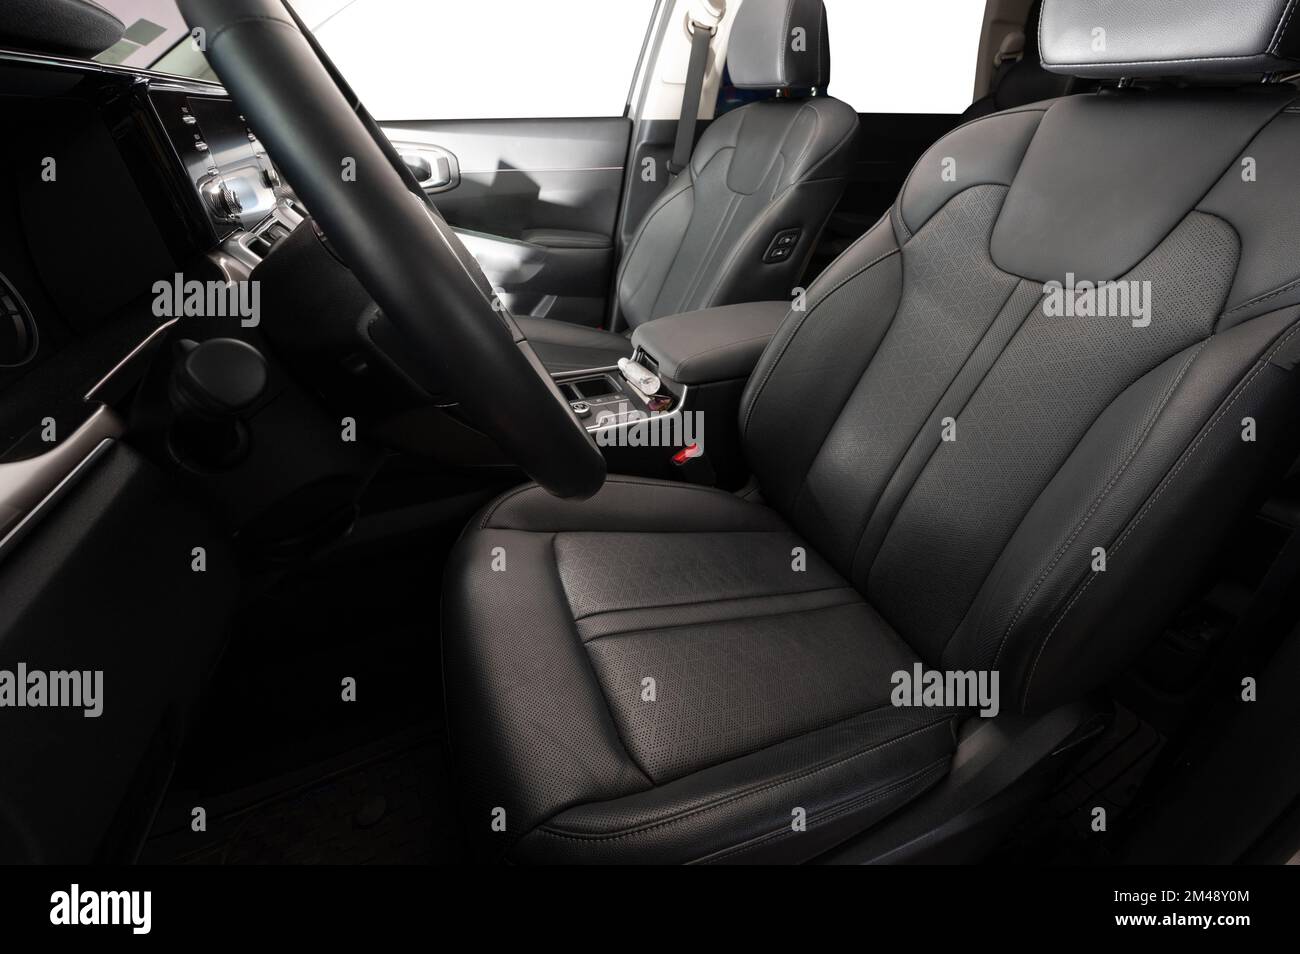 Avant cuir de voiture noir sièges propres vue latérale dans l'intérieur de voiture moderne Banque D'Images